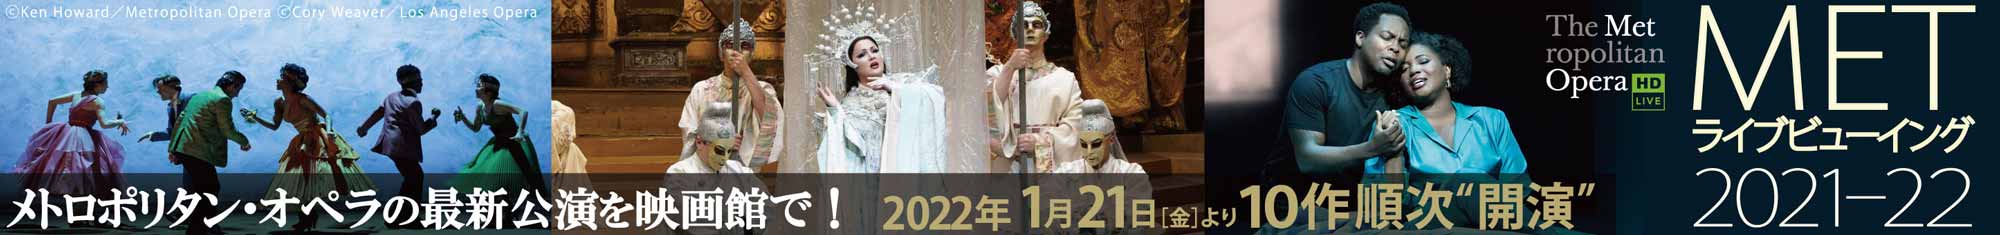 メトロポリタン・オペラの最新公演を映画館で！2022年1月21日(金)より10作順次”開演” METライブビューイング2021-22